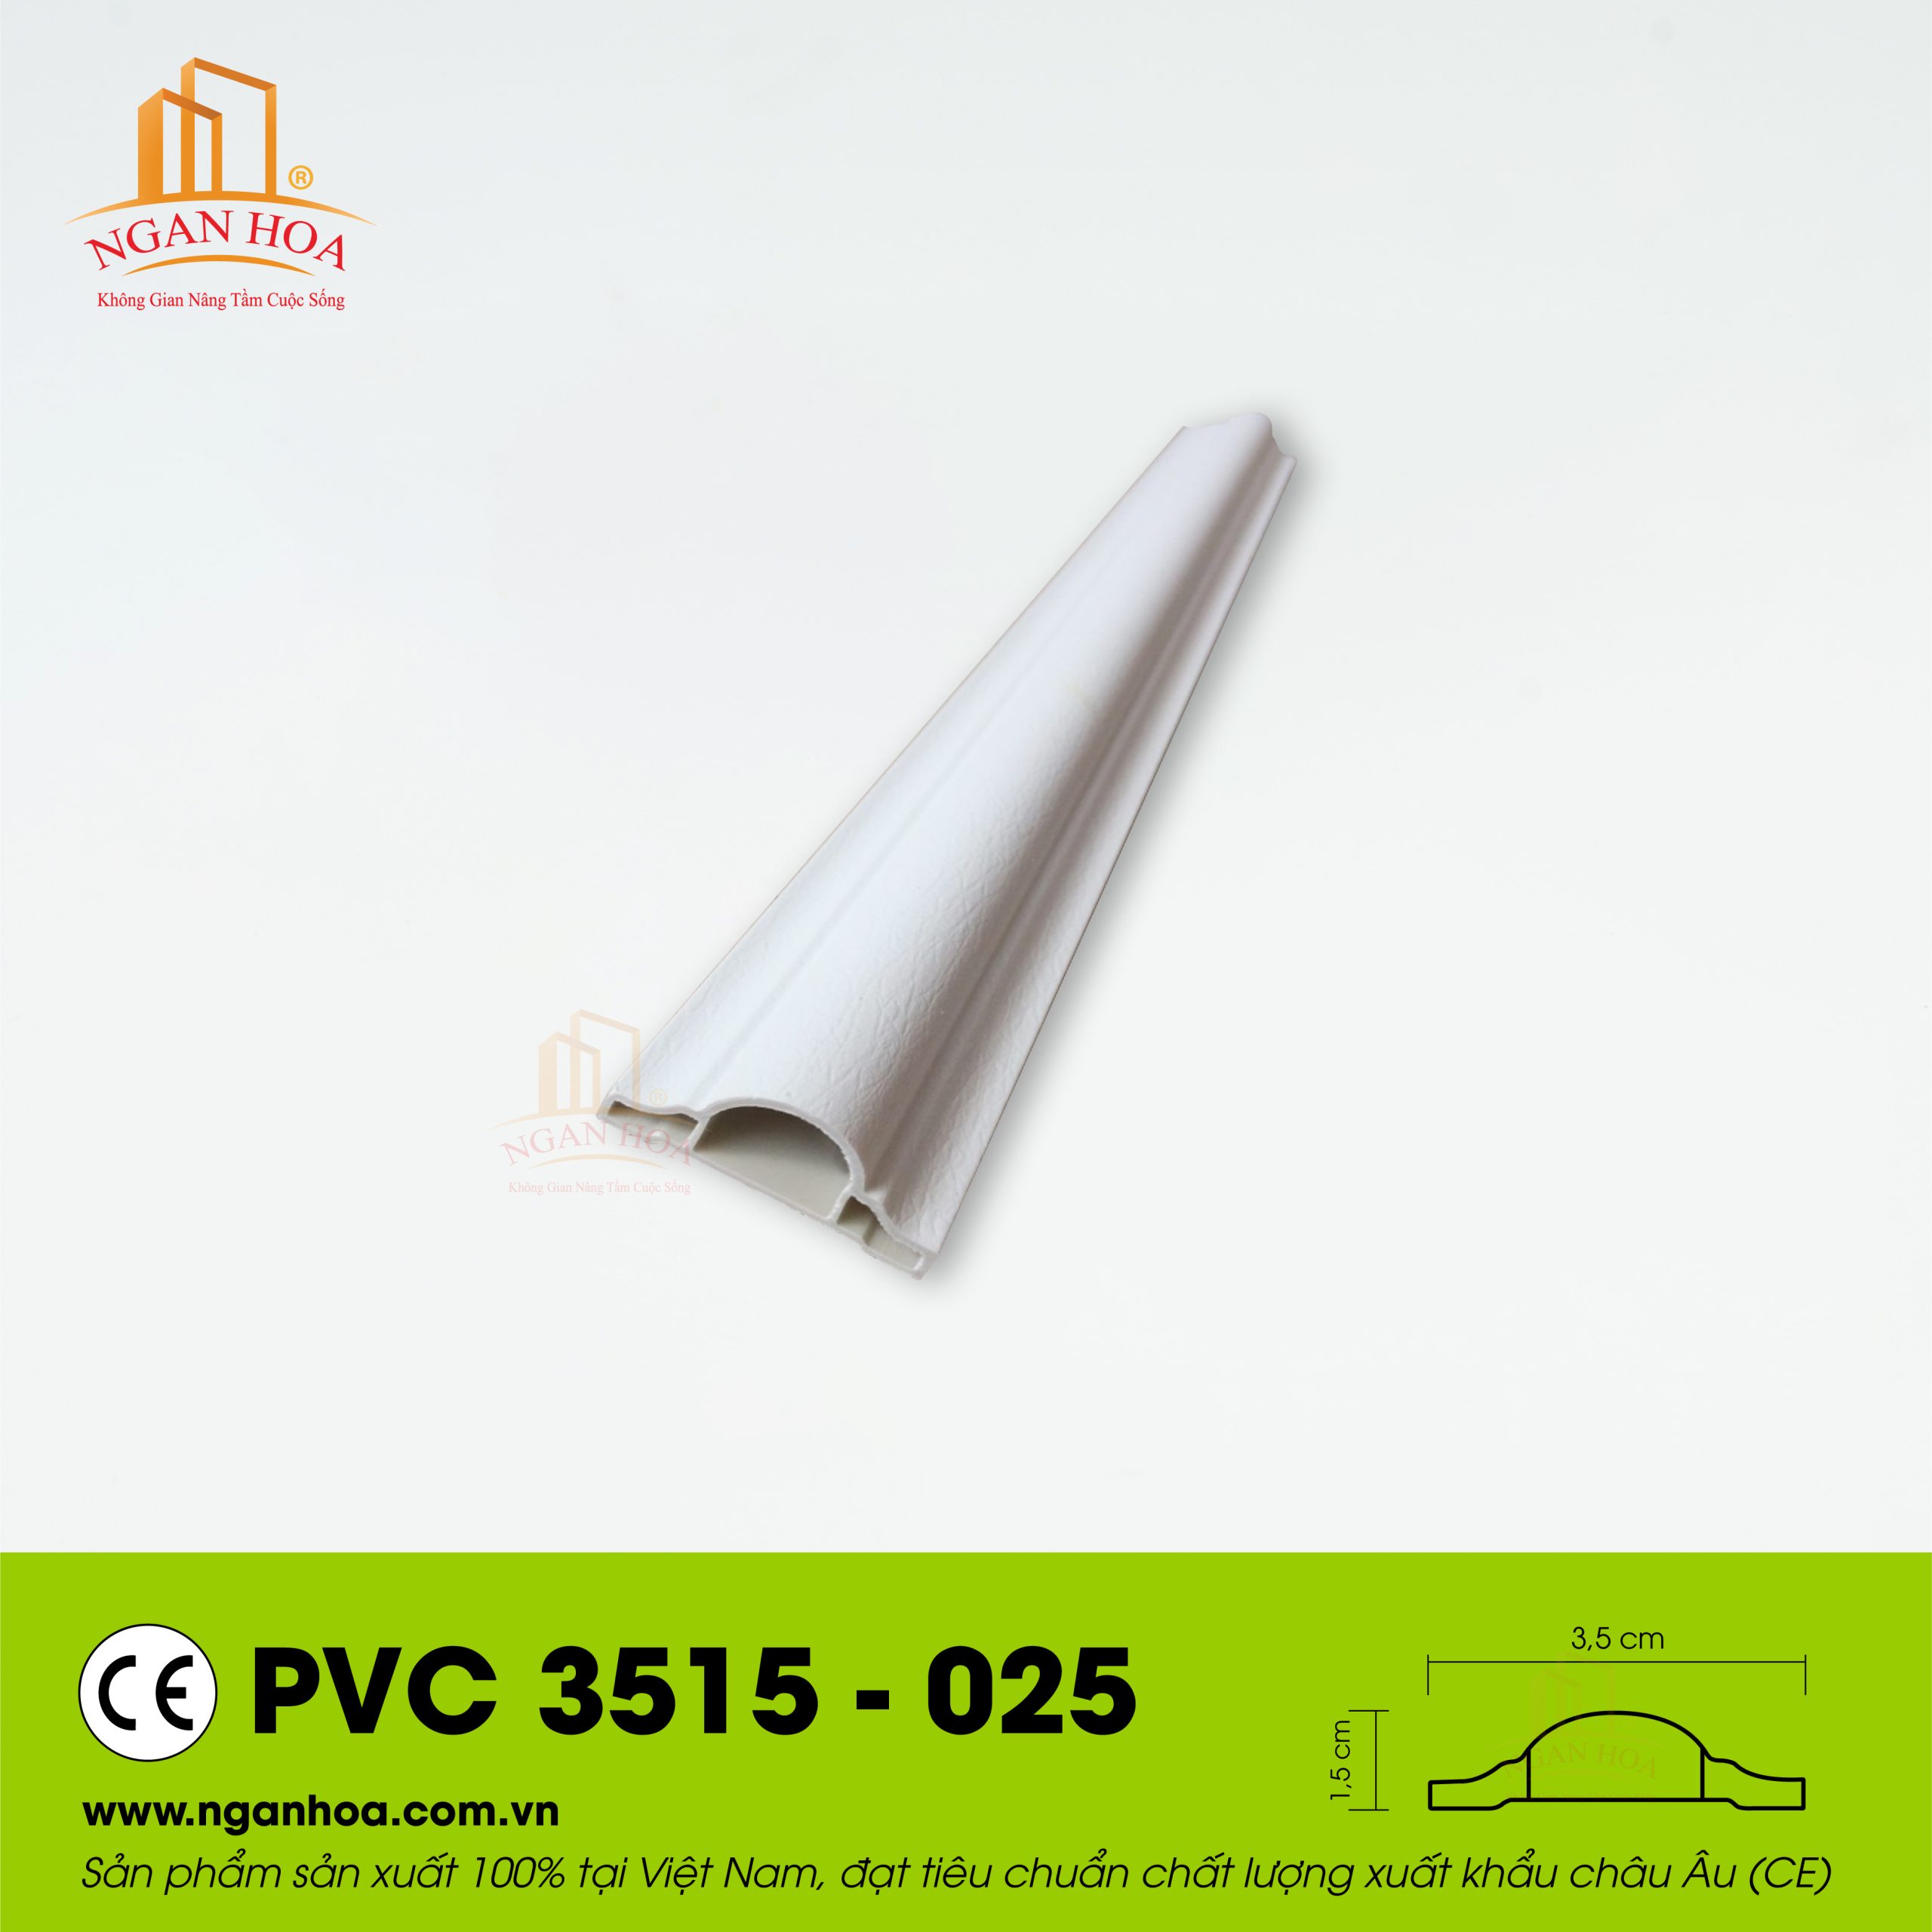 PVC 3515 025 scaled